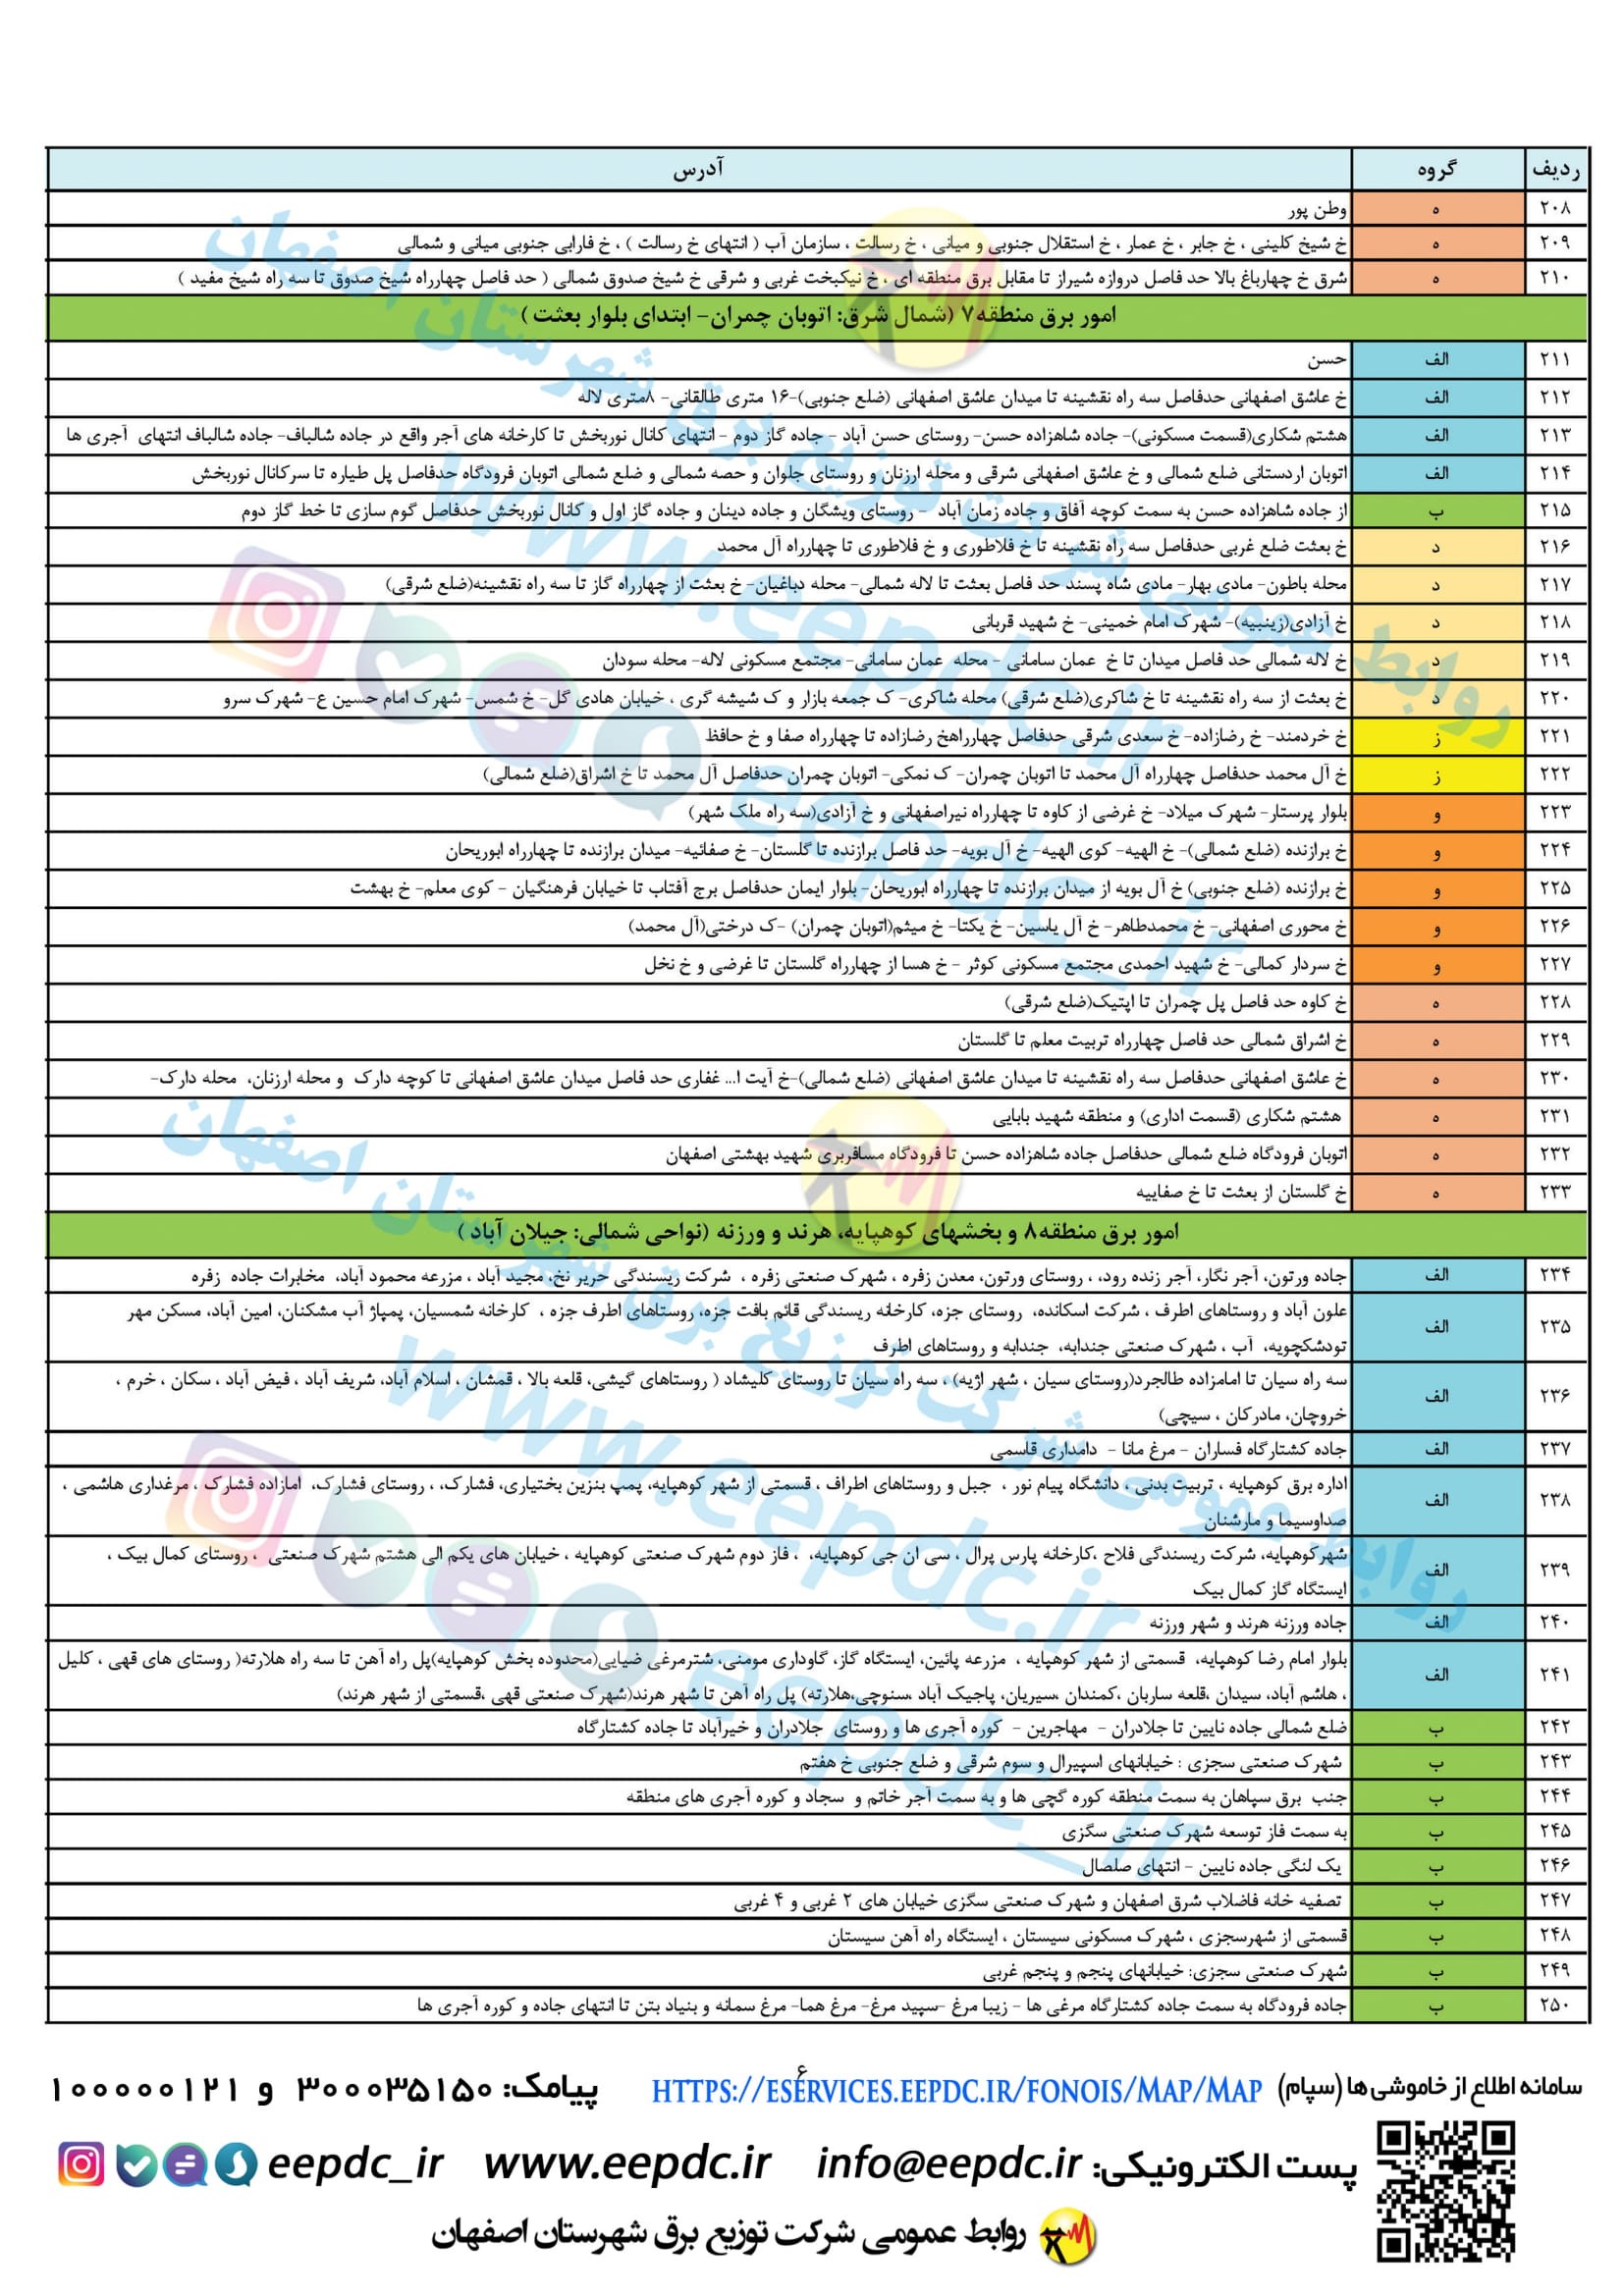 جدول قطعی برق اصفهان ۵ تا ۱۱ تیرماه ۱۴۰۰ + لیست مناطق و دانلود